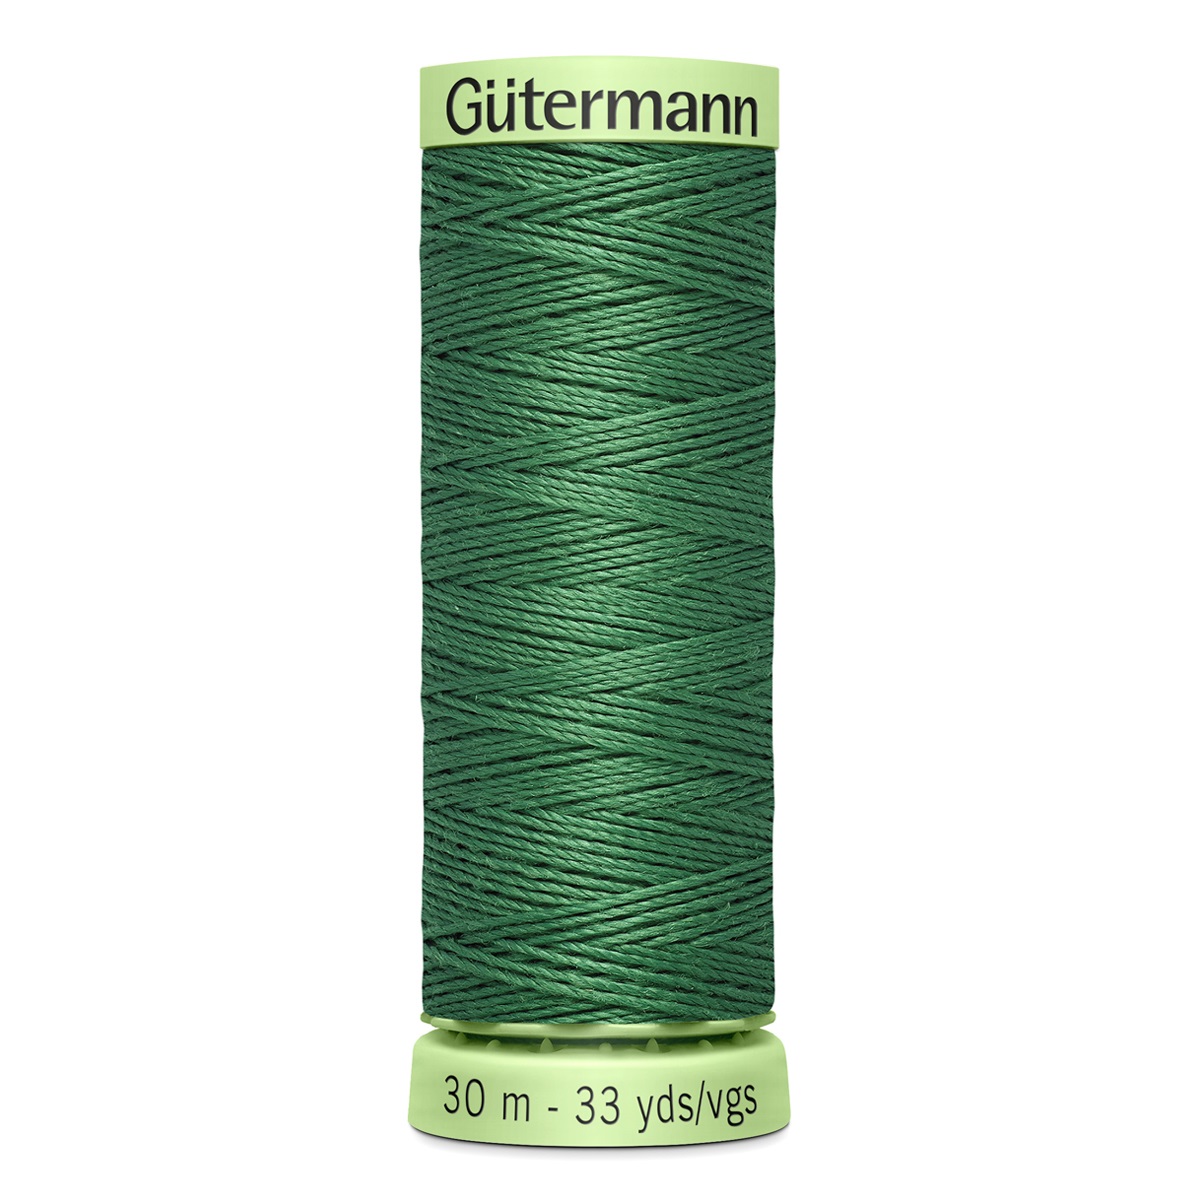 Нить Gutermann Top Stitch для отстрочки, 744506, 30 м (931 зеленый мох), 5 шт